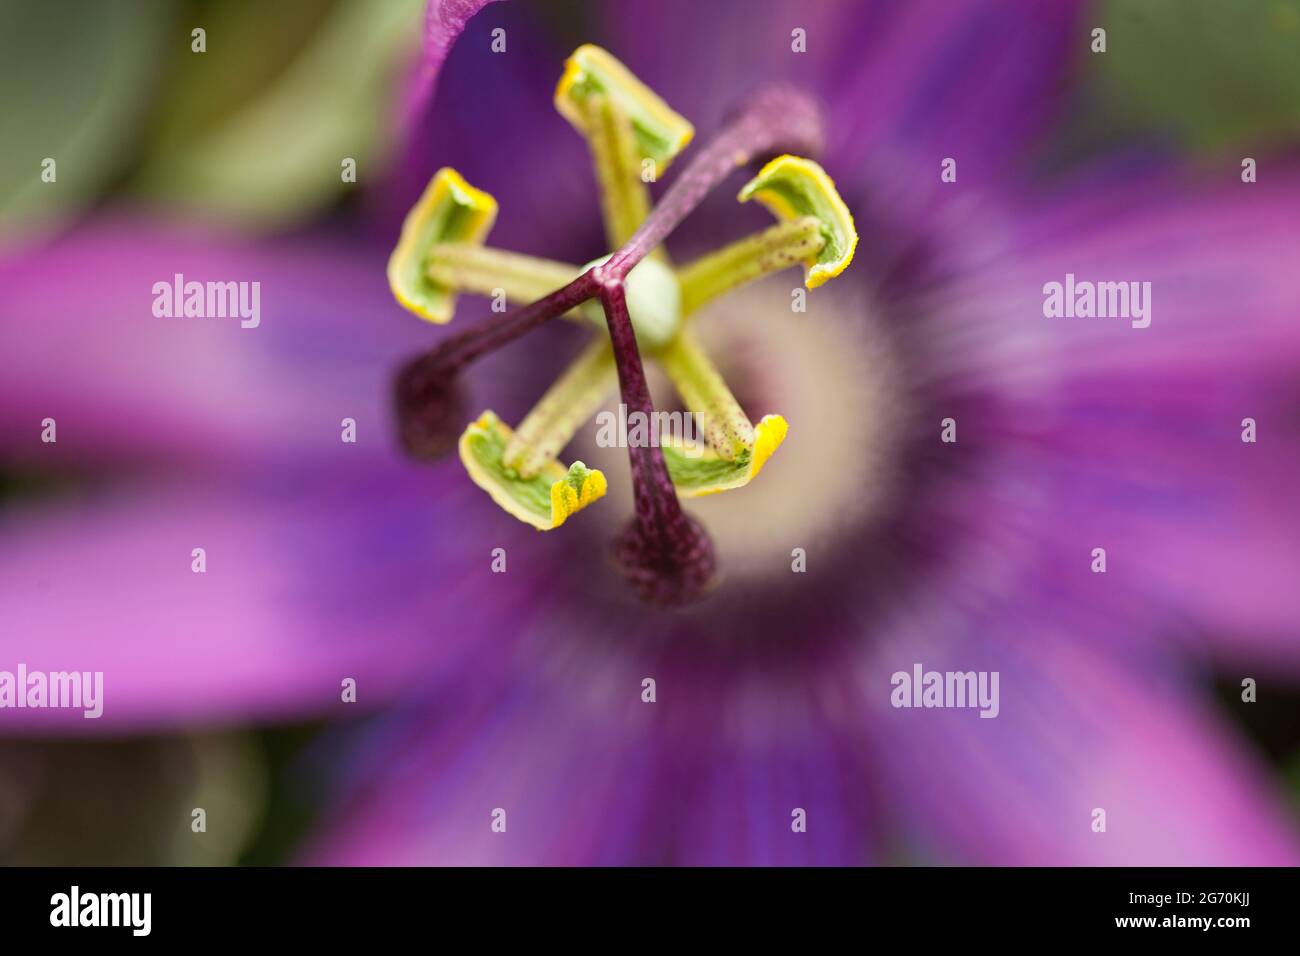 Gros plan, fleur de passionette violette Banque D'Images